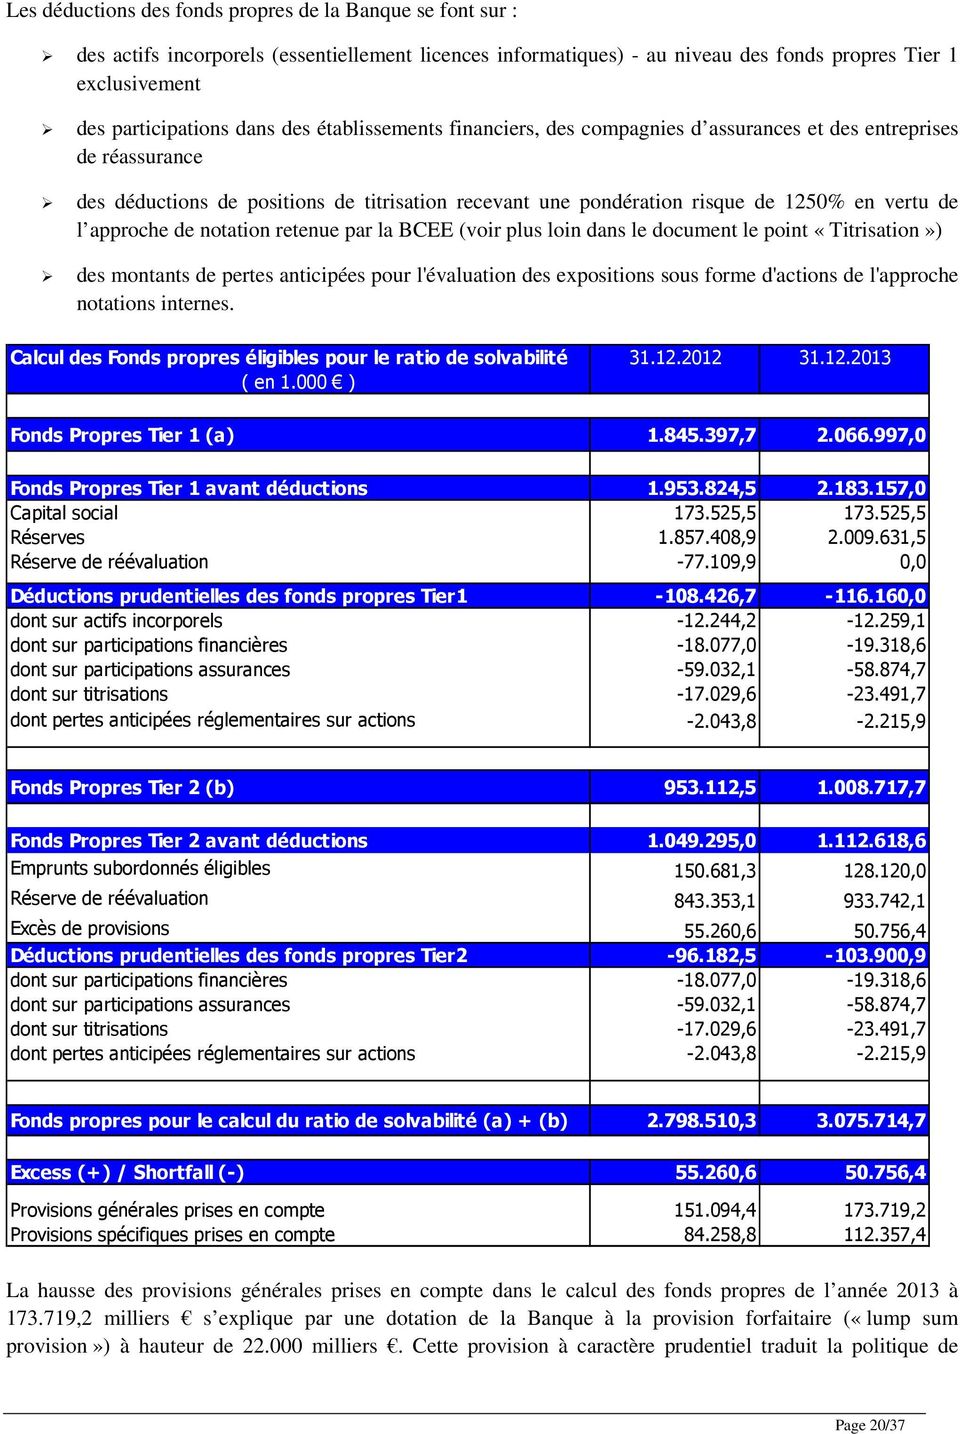 de notation retenue par la BCEE (voir plus loin dans le document le point «Titrisation») des montants de pertes anticipées pour l'évaluation des expositions sous forme d'actions de l'approche